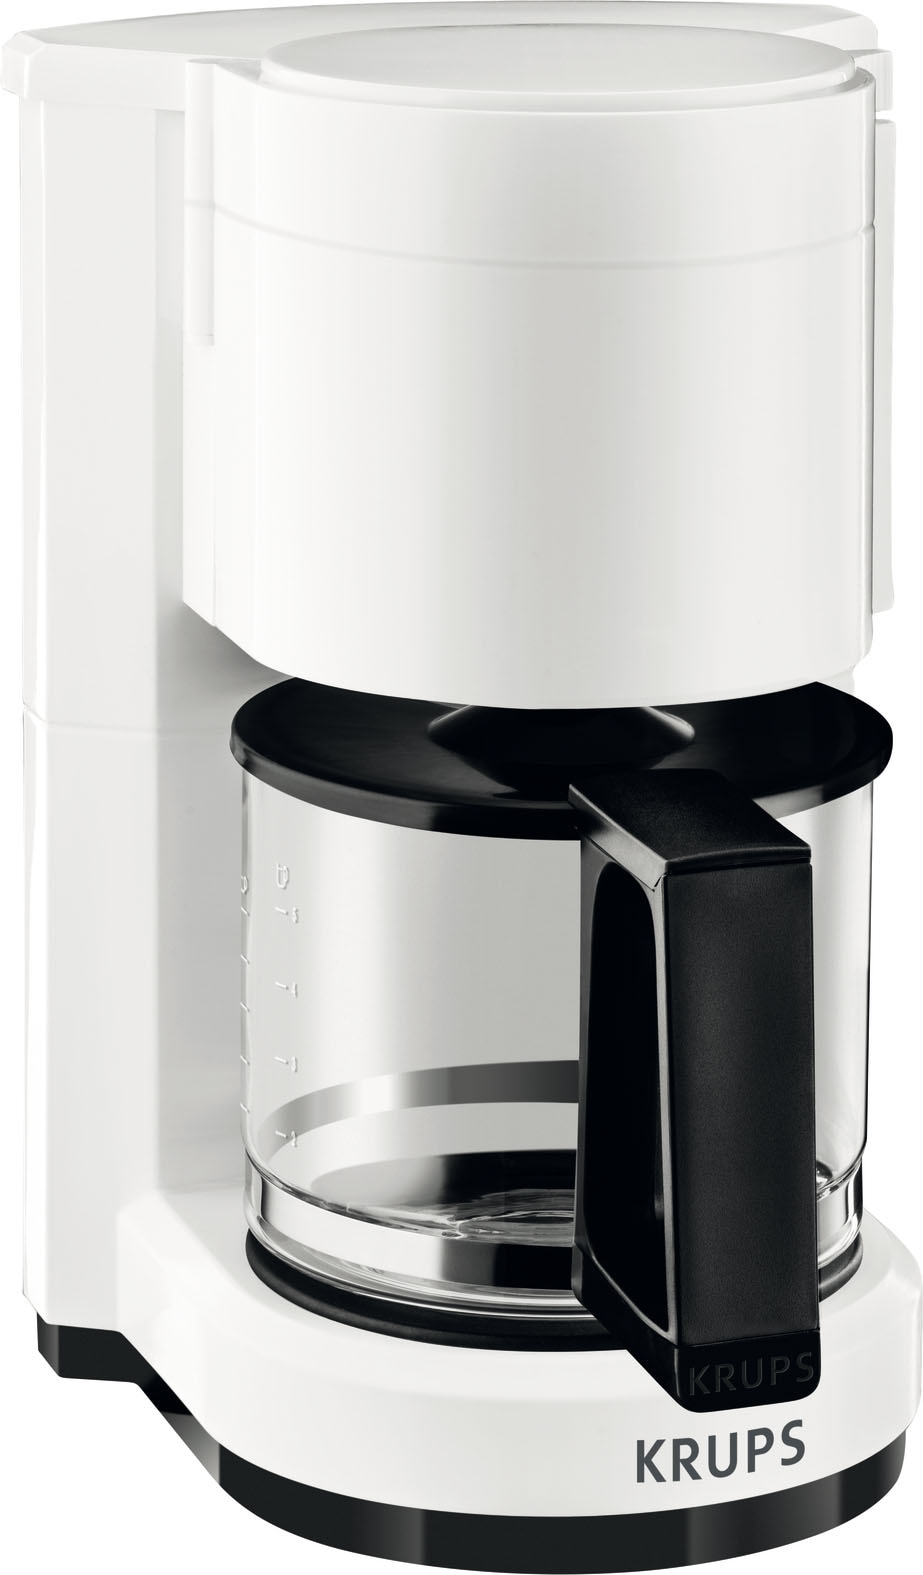 Krups Filterkaffeemaschine "F18301 Aromacafe", 0,6 l Kaffeekanne, für 5-7 Tassen Kaffee, herausnehmbarer Filterhalter, W